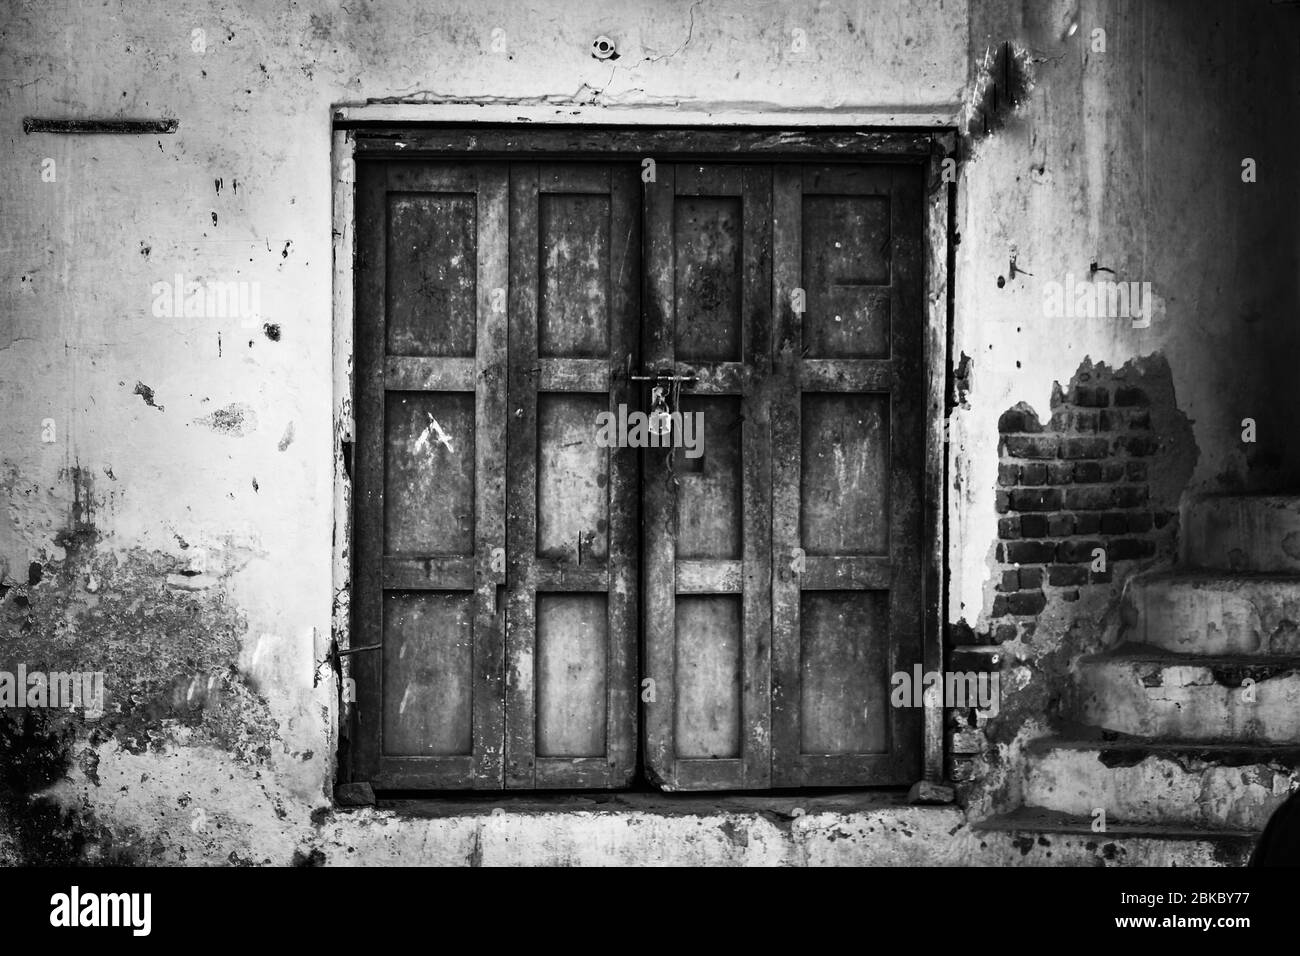 Une photo monochrome d'une maison fermée avec une porte en bois rustique Banque D'Images